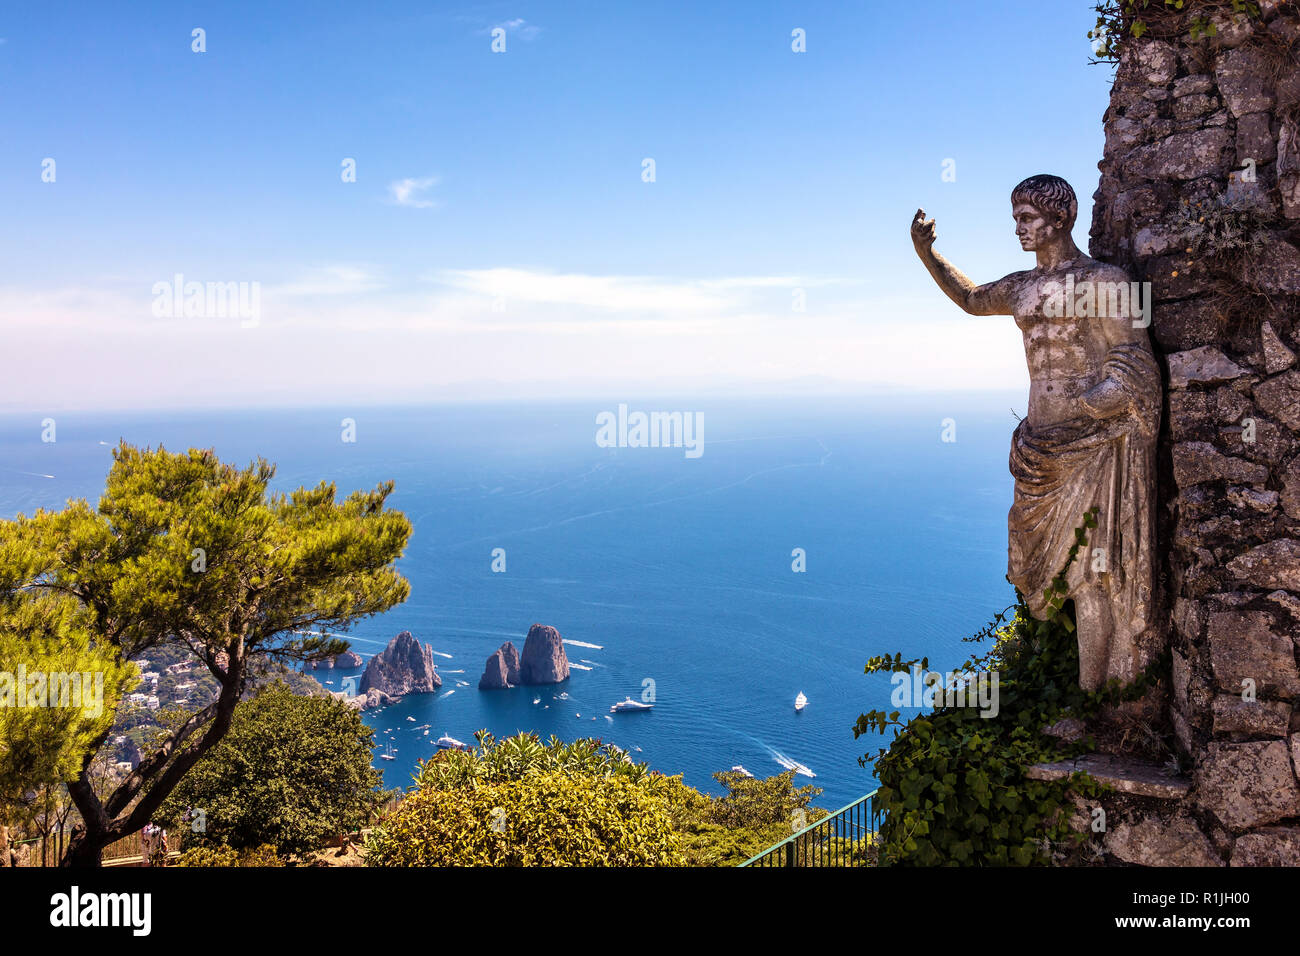 Vista sul mare e la statua dell'imperatore agosto, dalle alture del Monte Solaro, Anacapri, Isola di Capri, Italie Foto Stock